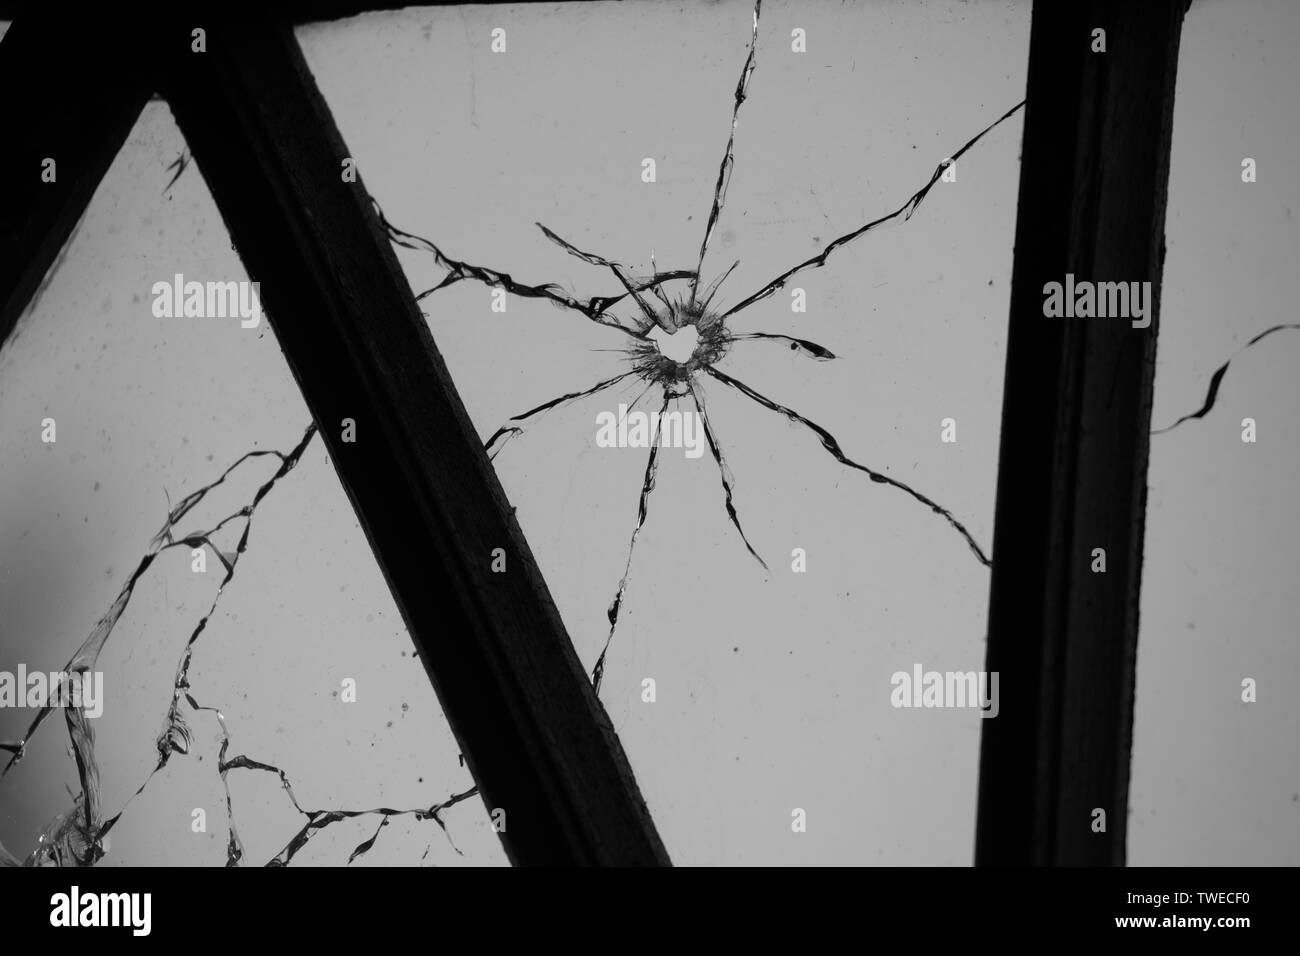 12.2005 et casse de la fenêtre en verre frappé par une balle de pistolet Banque D'Images